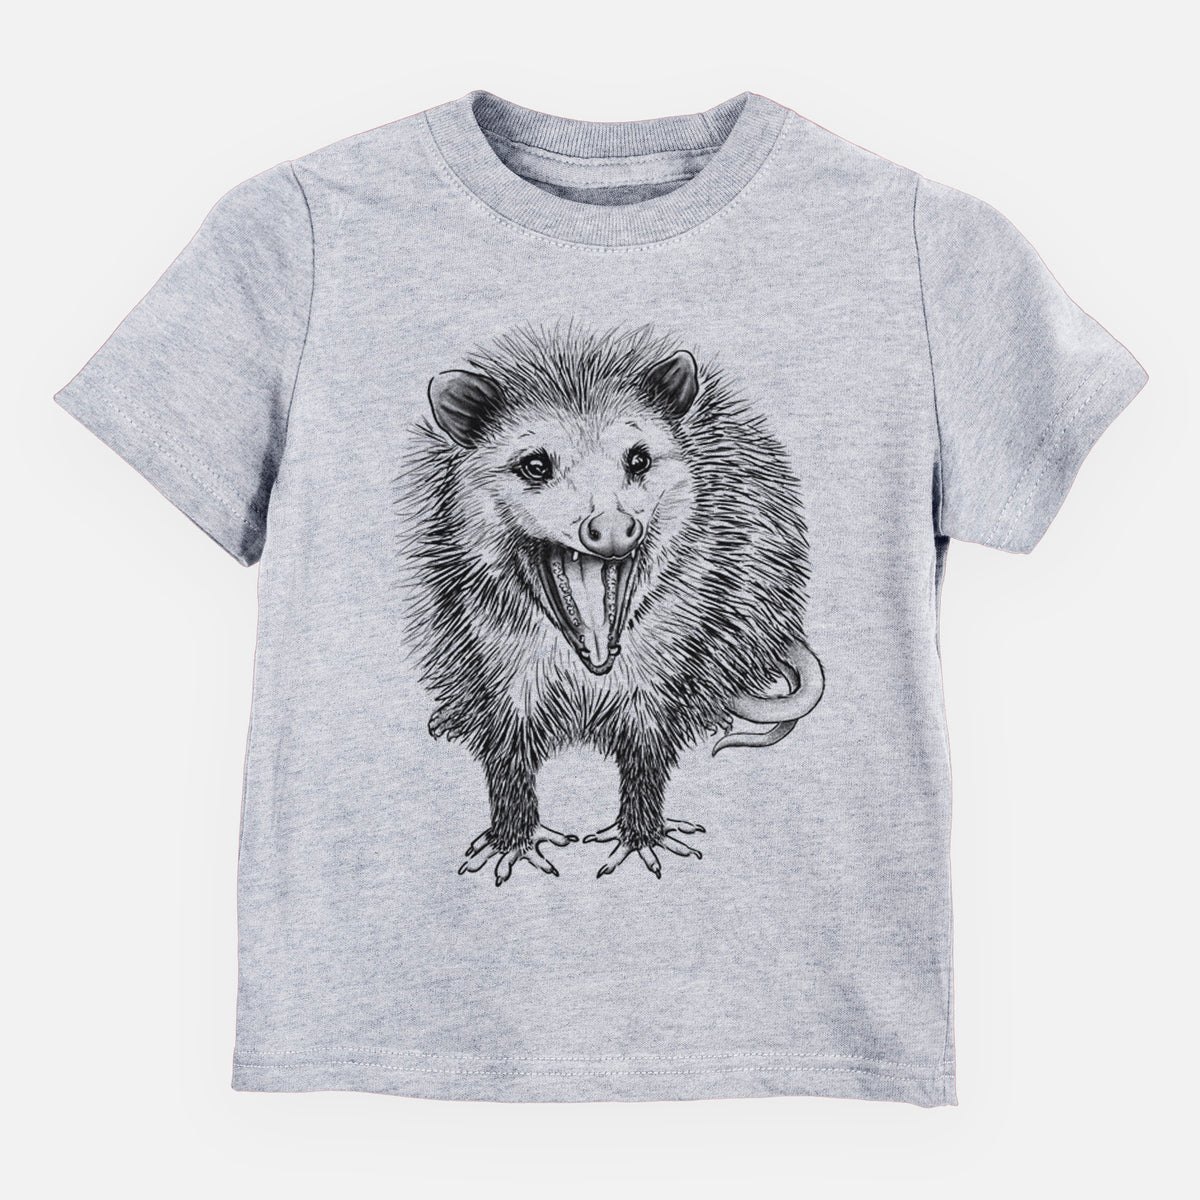 Hissing Opossum - Didelphidae - Kids Shirt